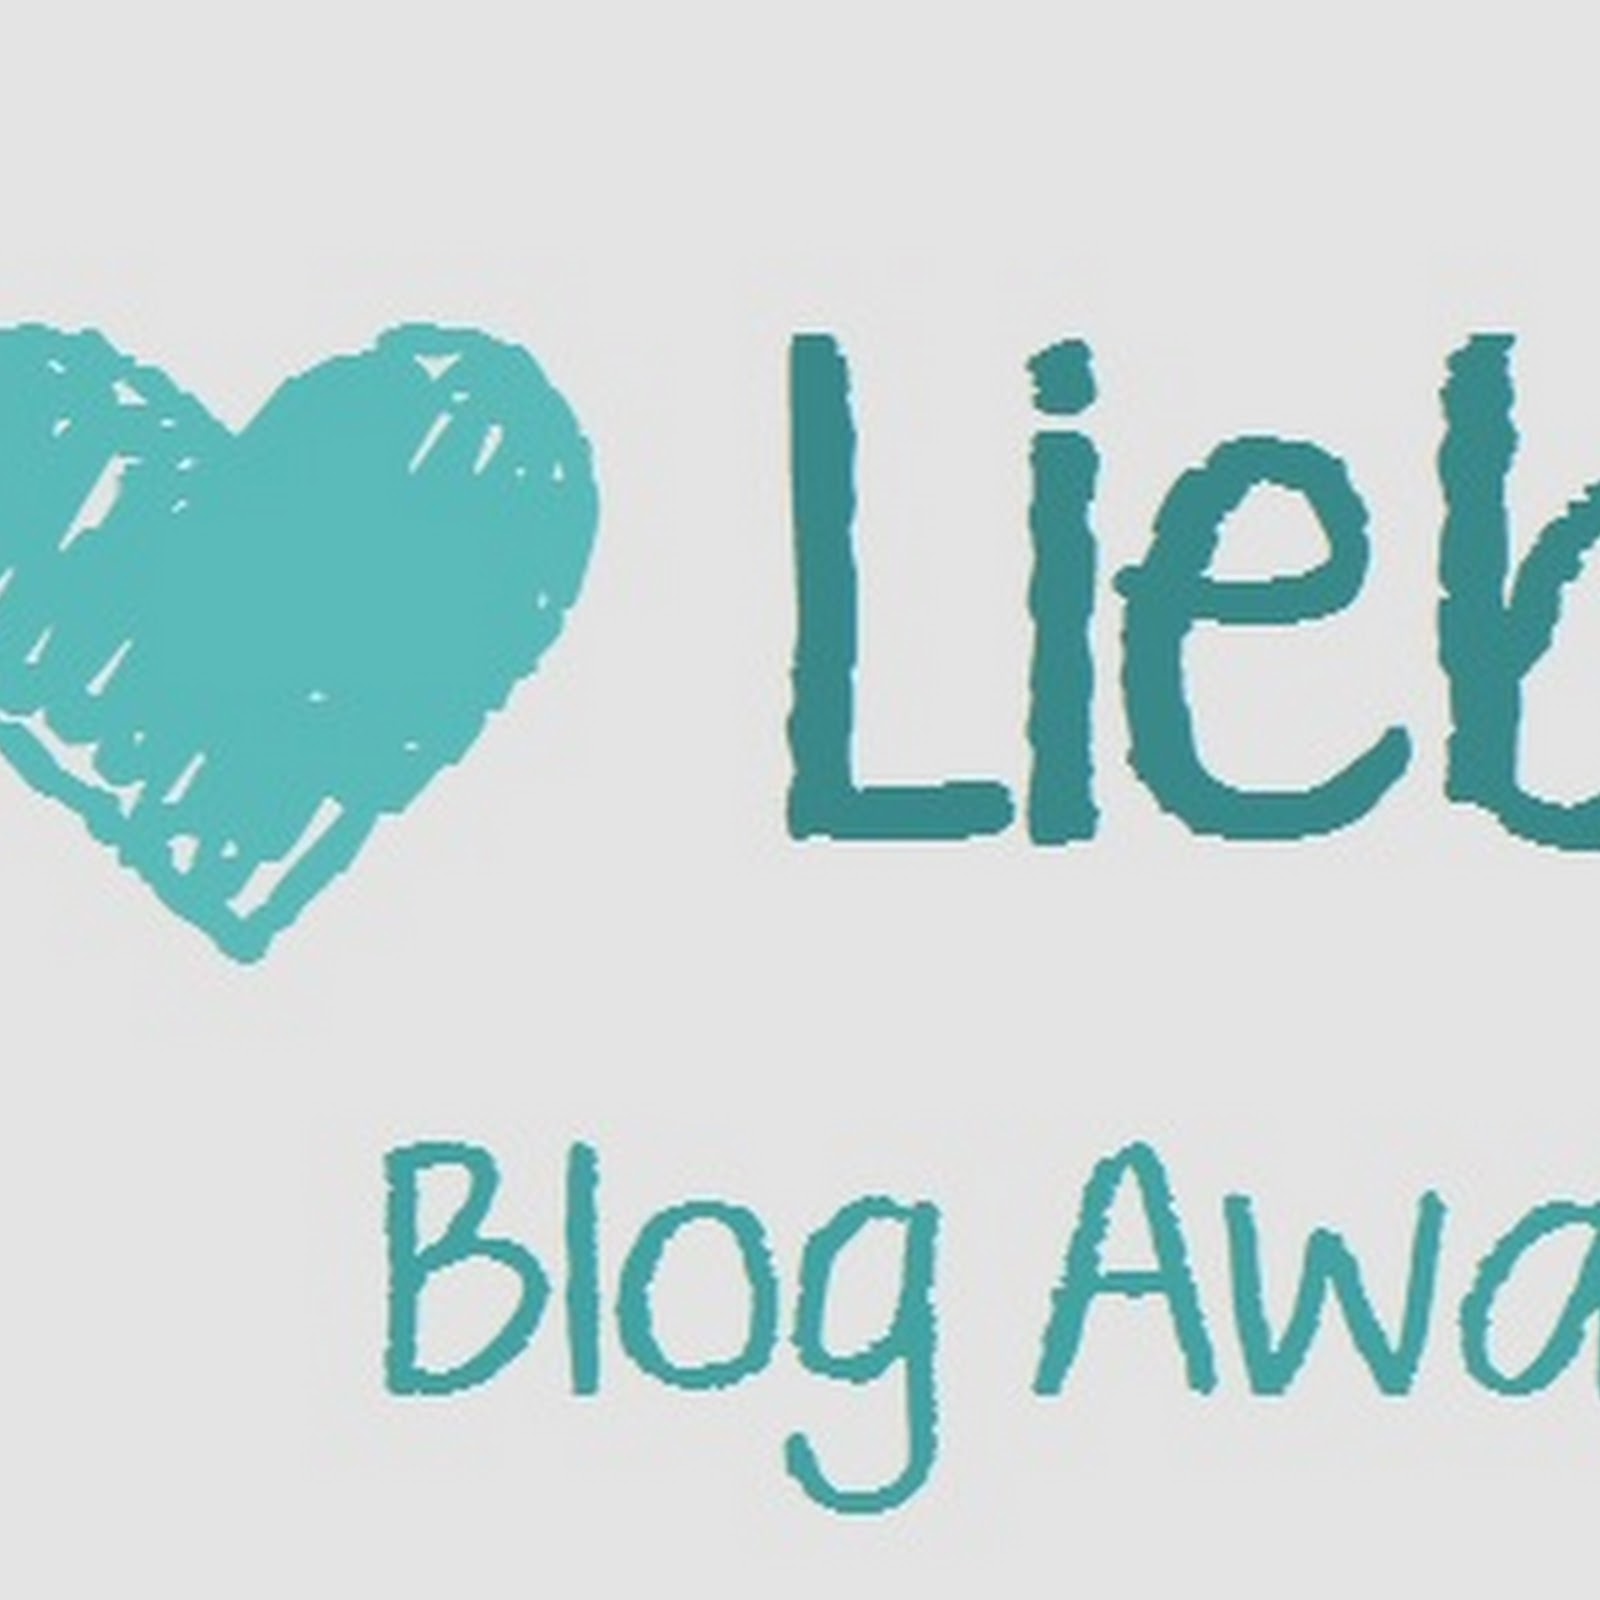 Liebster Blog Award 2015